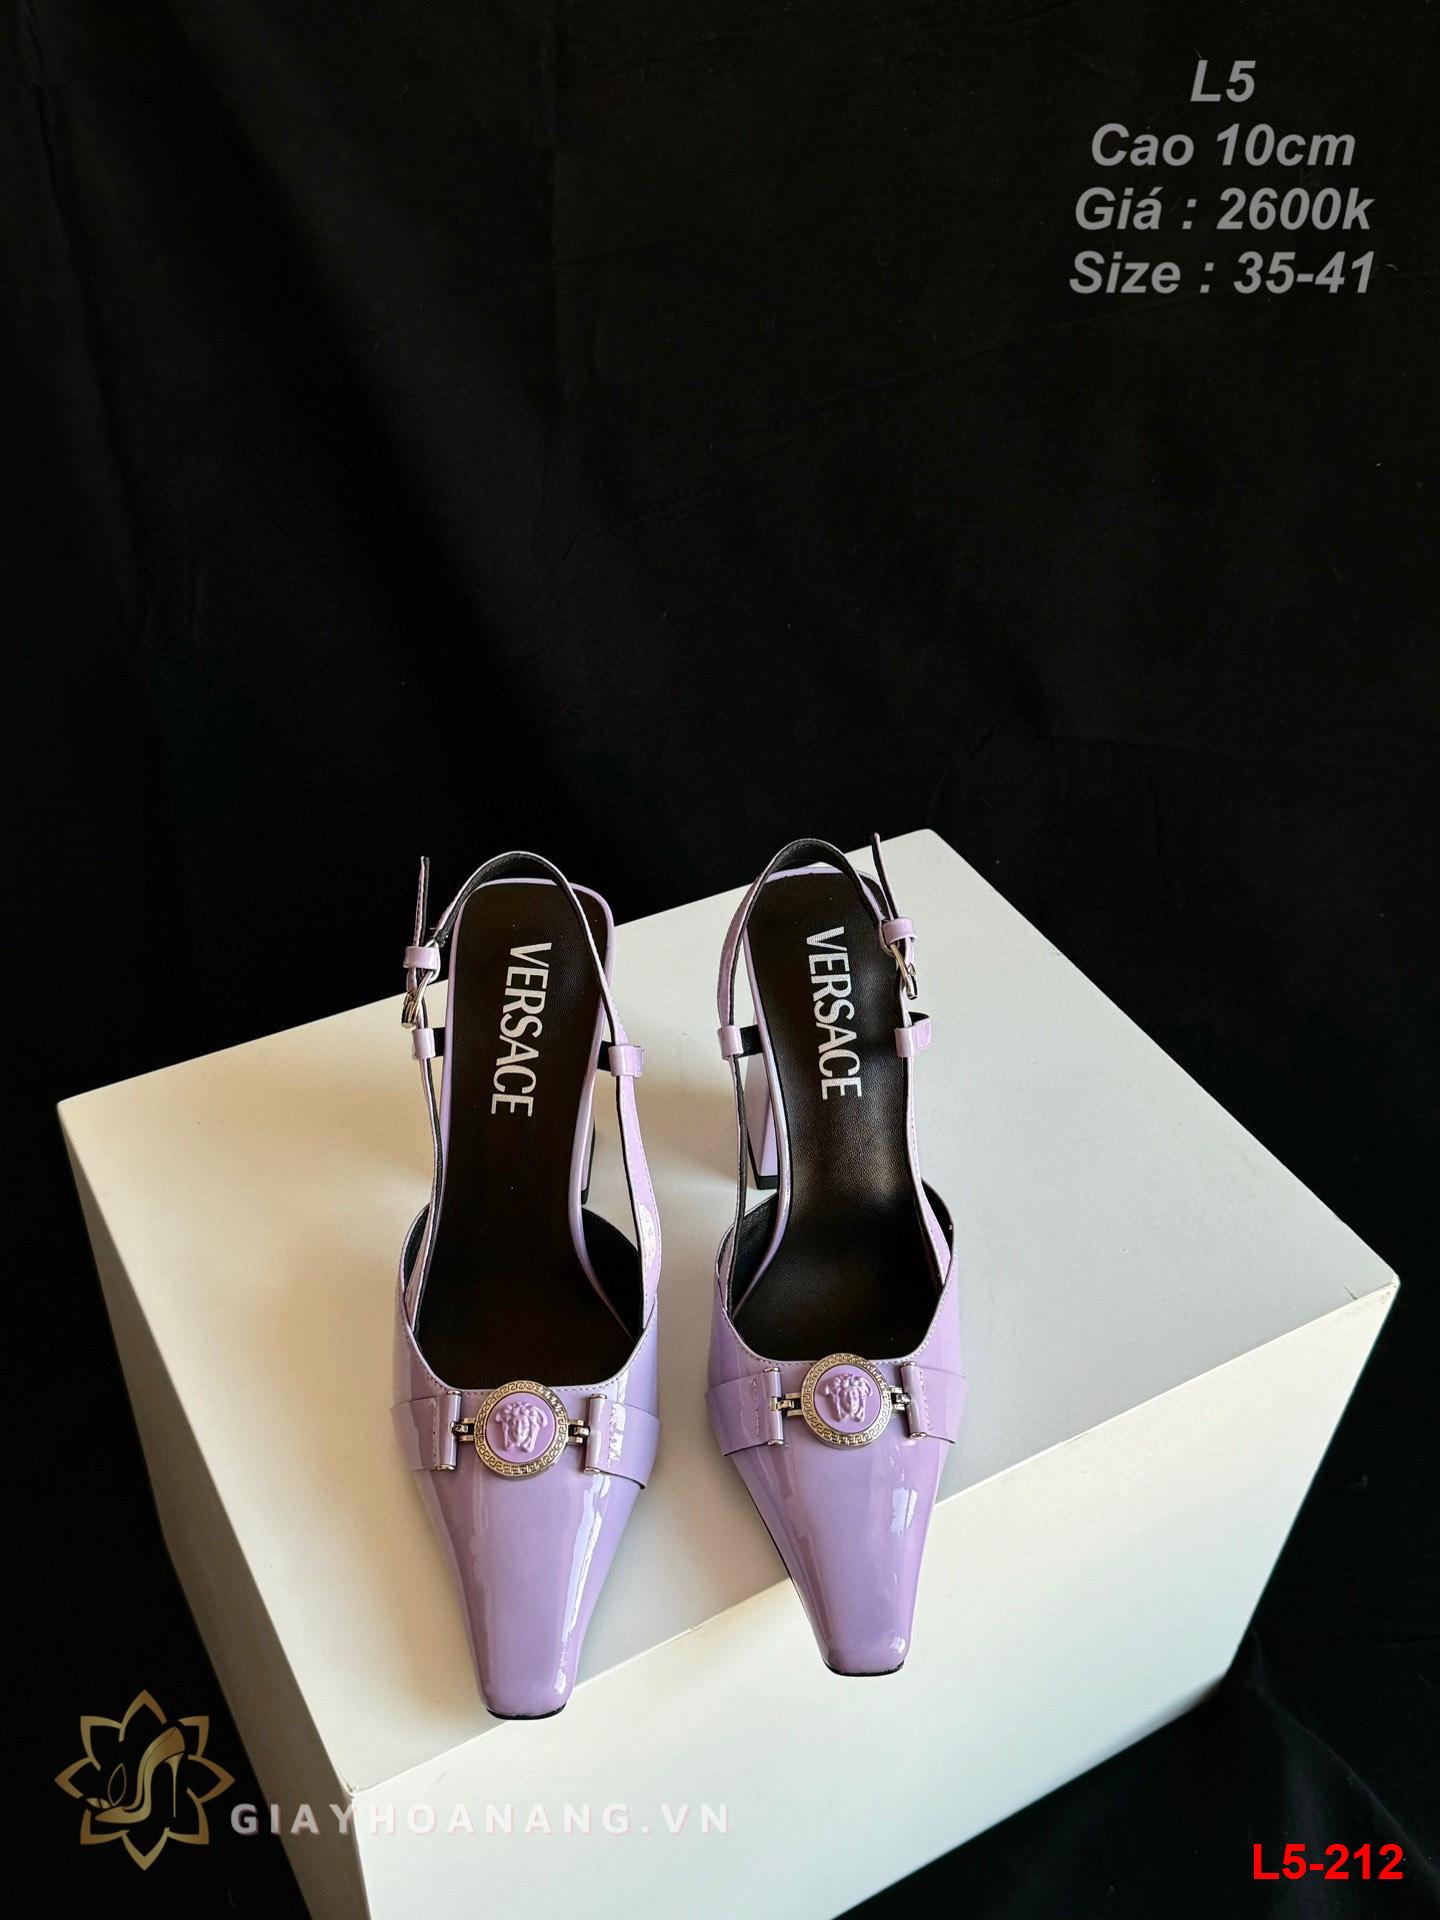 L5-212 Versace sandal cao 10cm siêu cấp